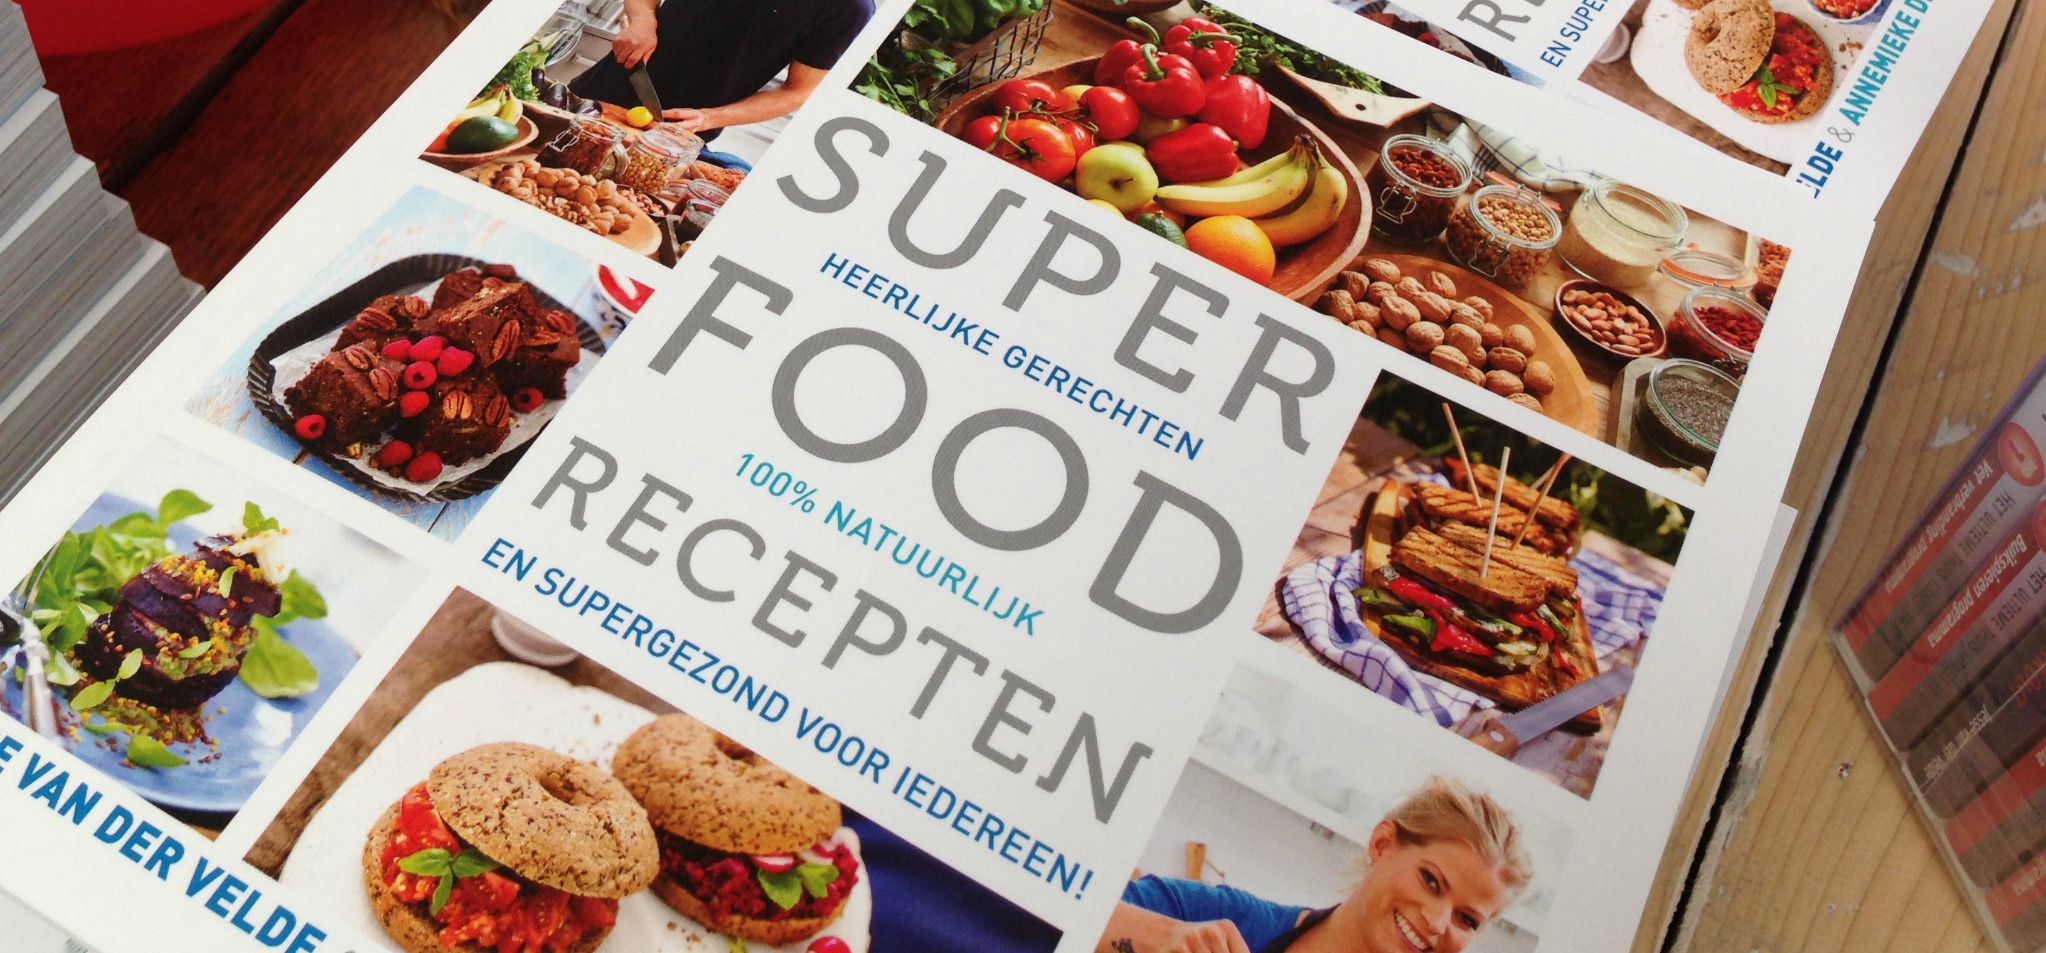 vergeetachtig Vermoorden omzeilen Superfood Recepten boek - I Love Health